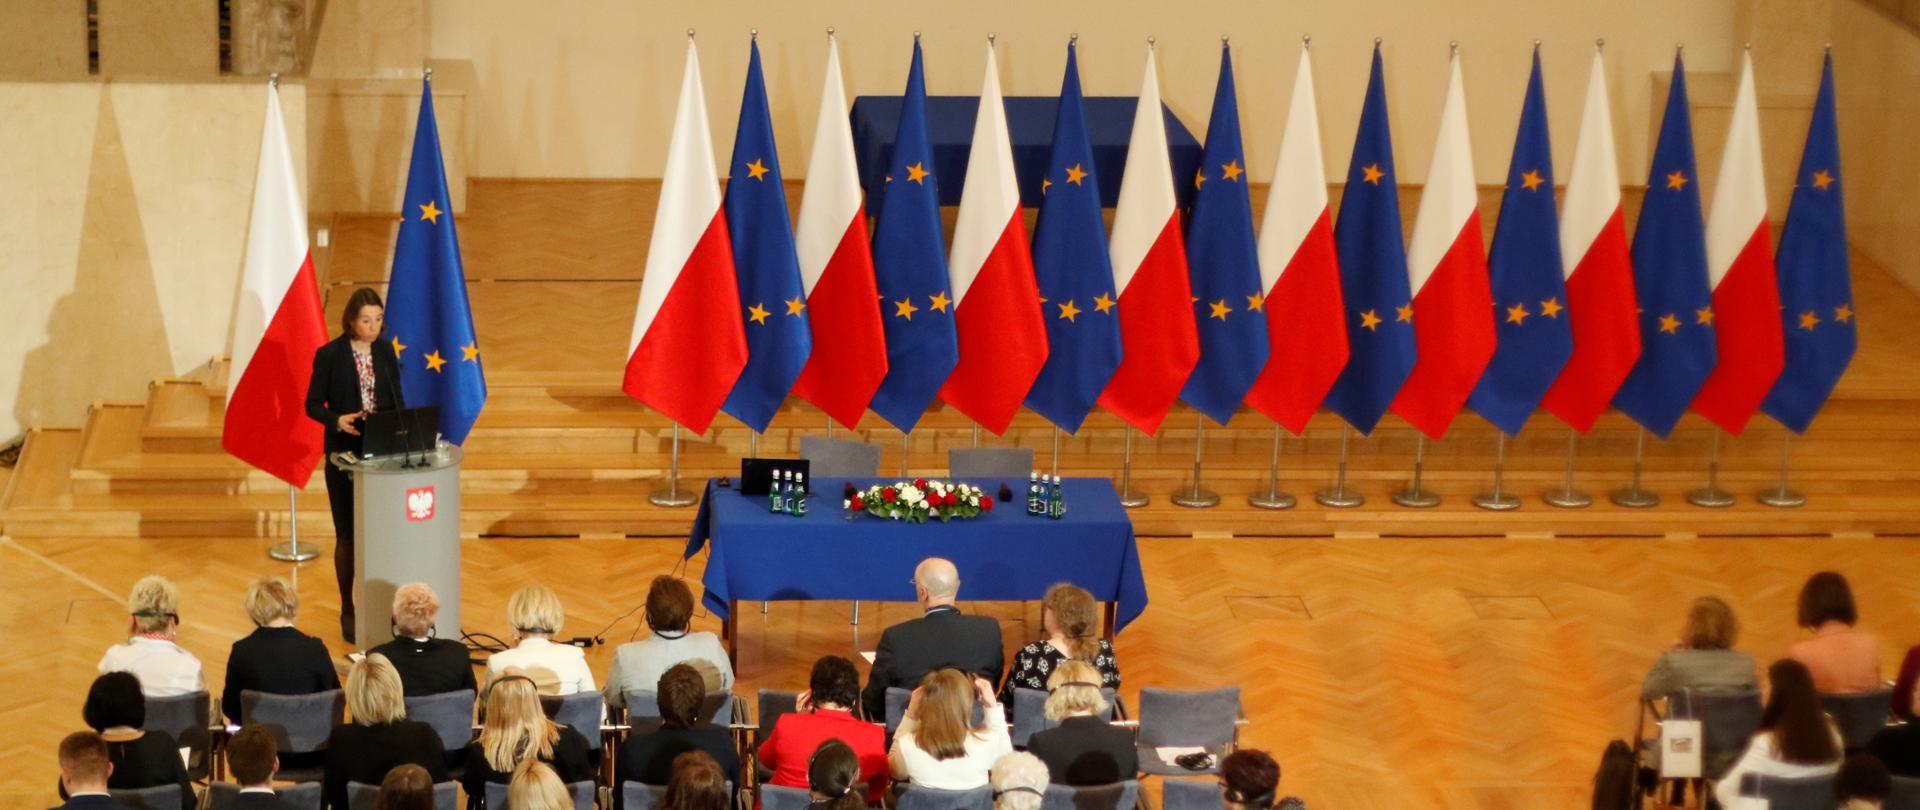 Widok sali w Kancelarii Premiera z gór. W tle flagi Polski i Unii Europejskiej
